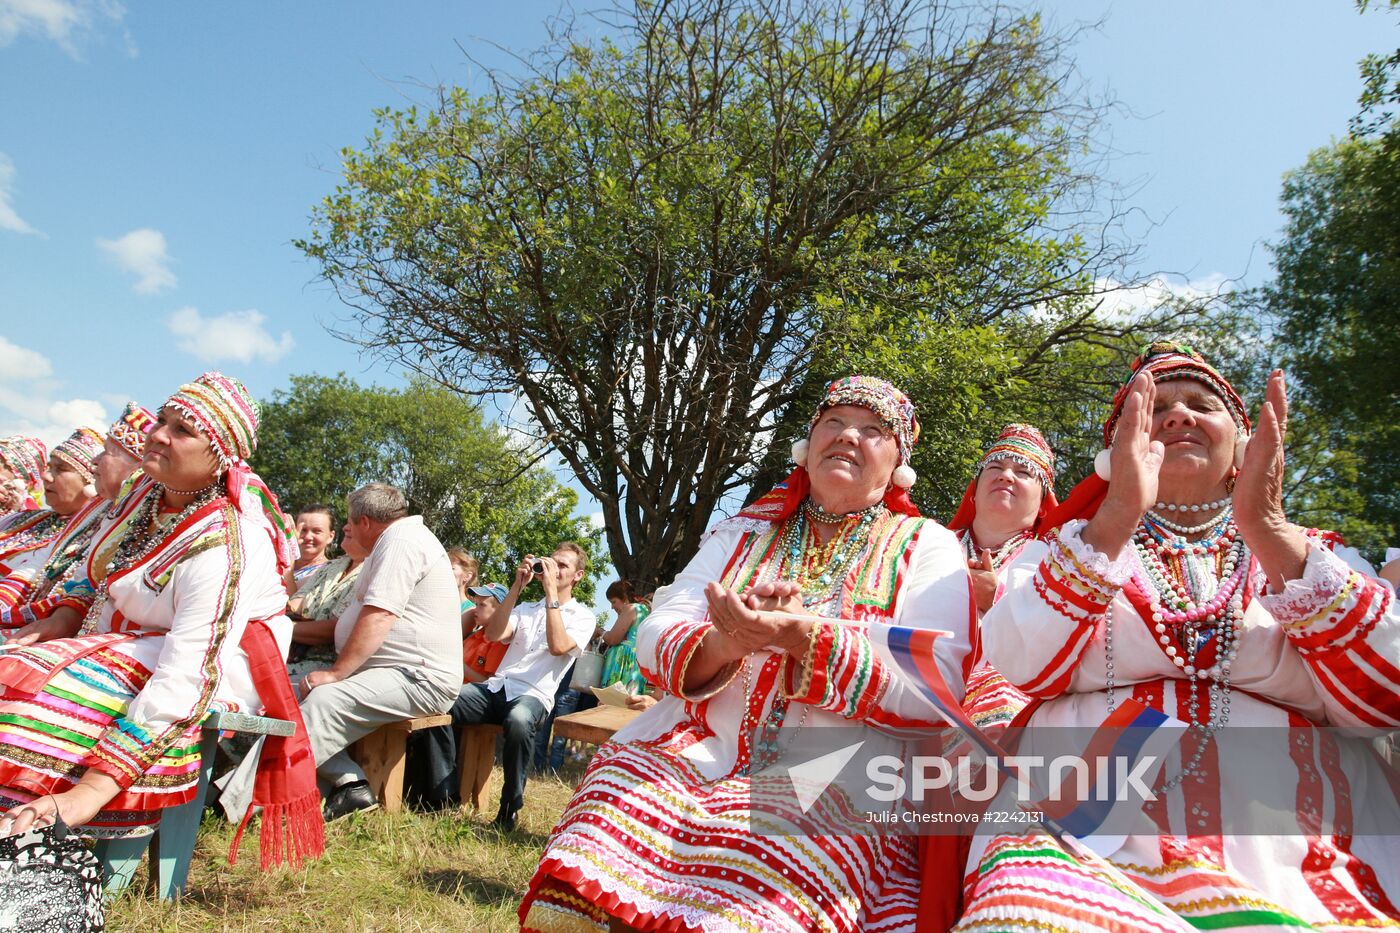 Rasken Ozks festival in Mordovia